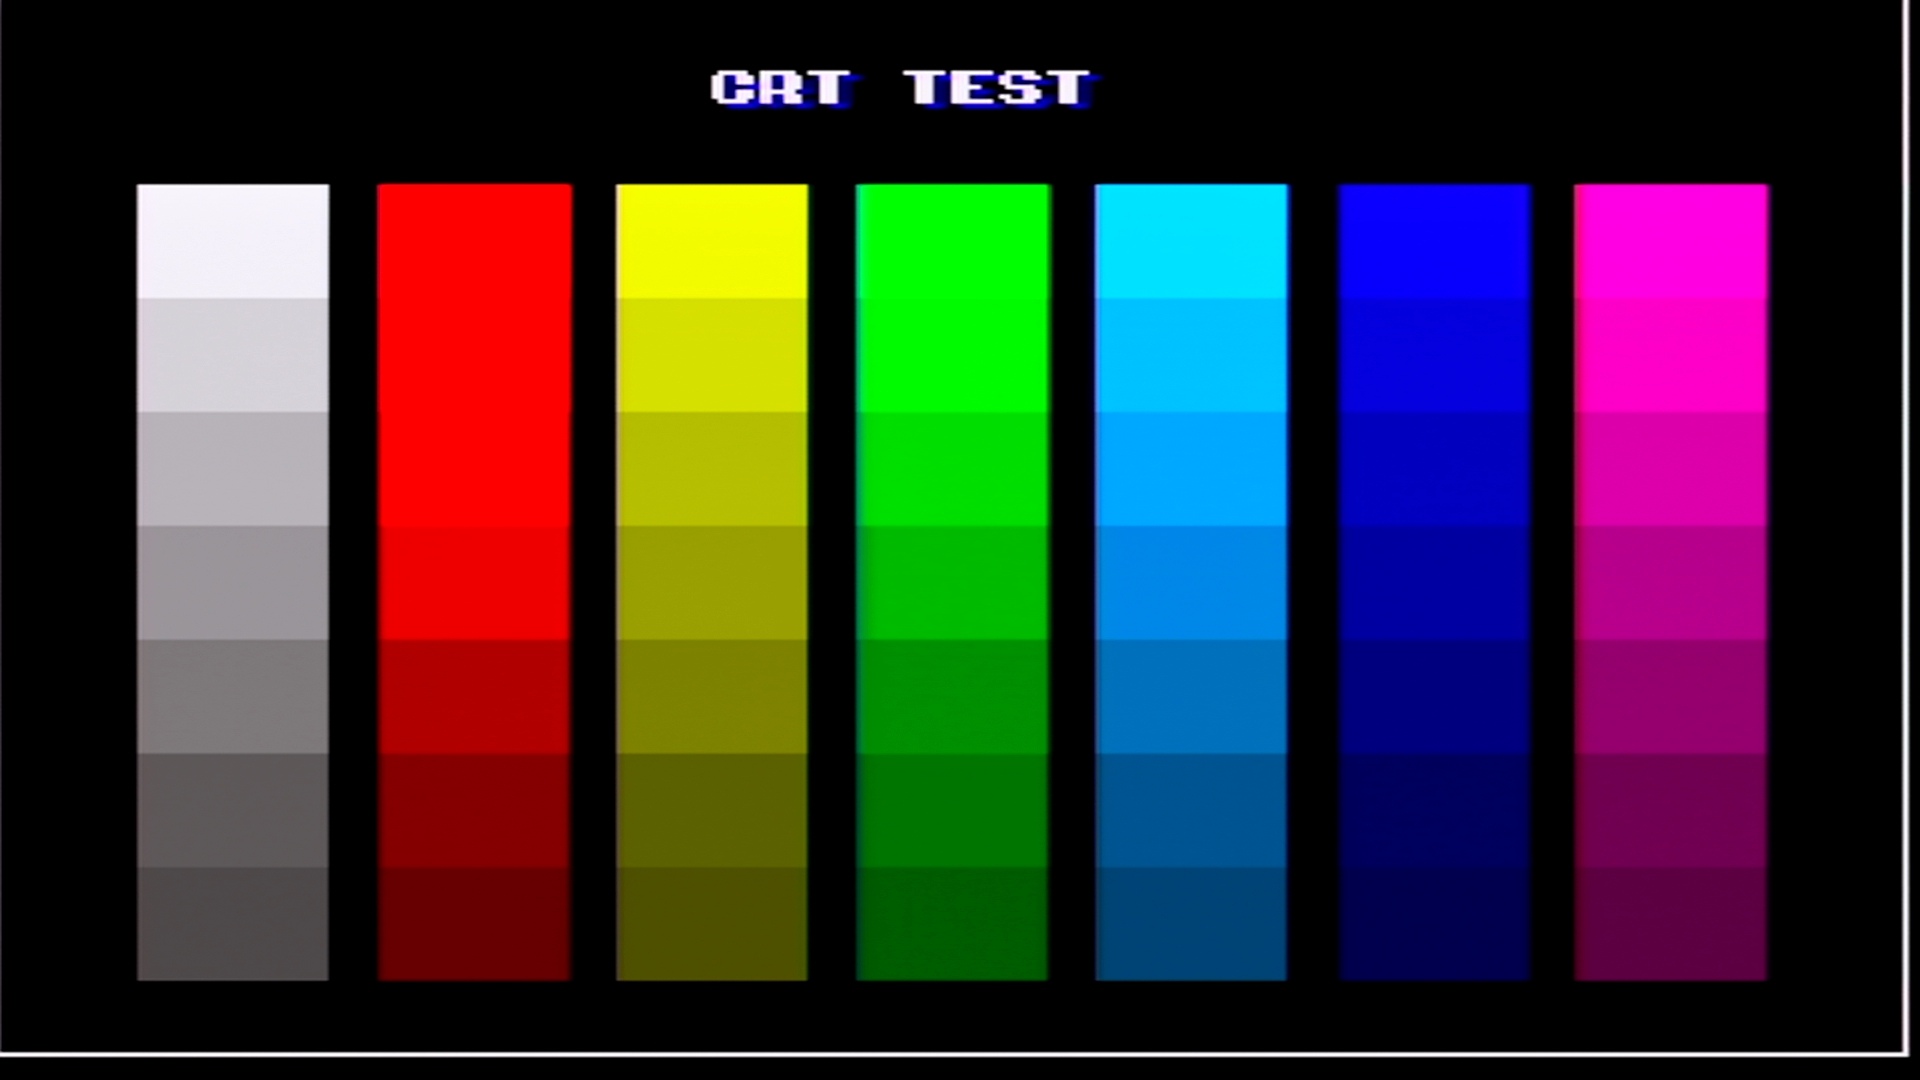 CRT test screen